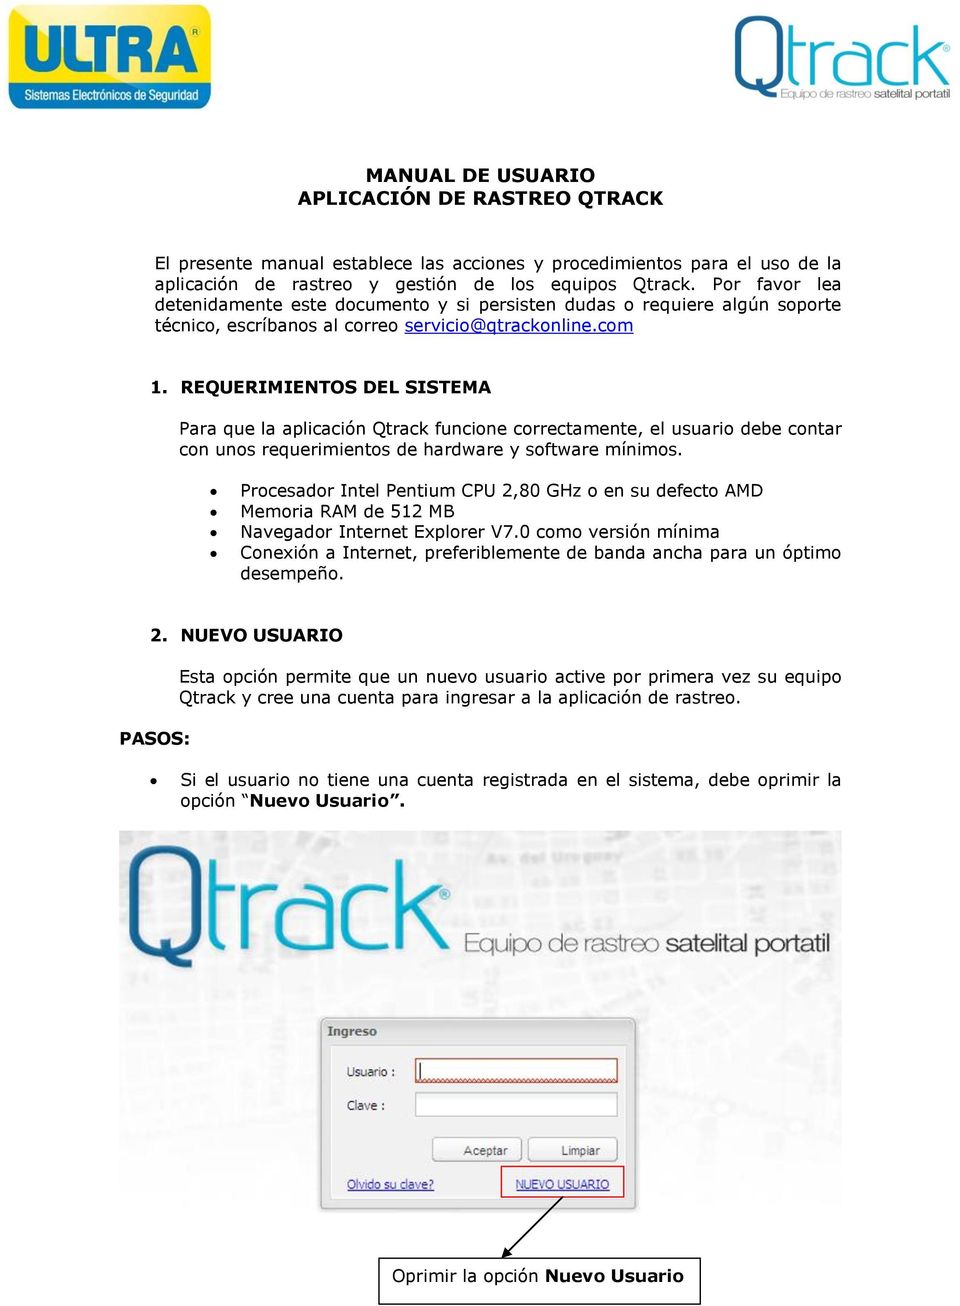 REQUERIMIENTOS DEL SISTEMA Para que la aplicación Qtrack funcione correctamente, el usuario debe contar con unos requerimientos de hardware y software mínimos.